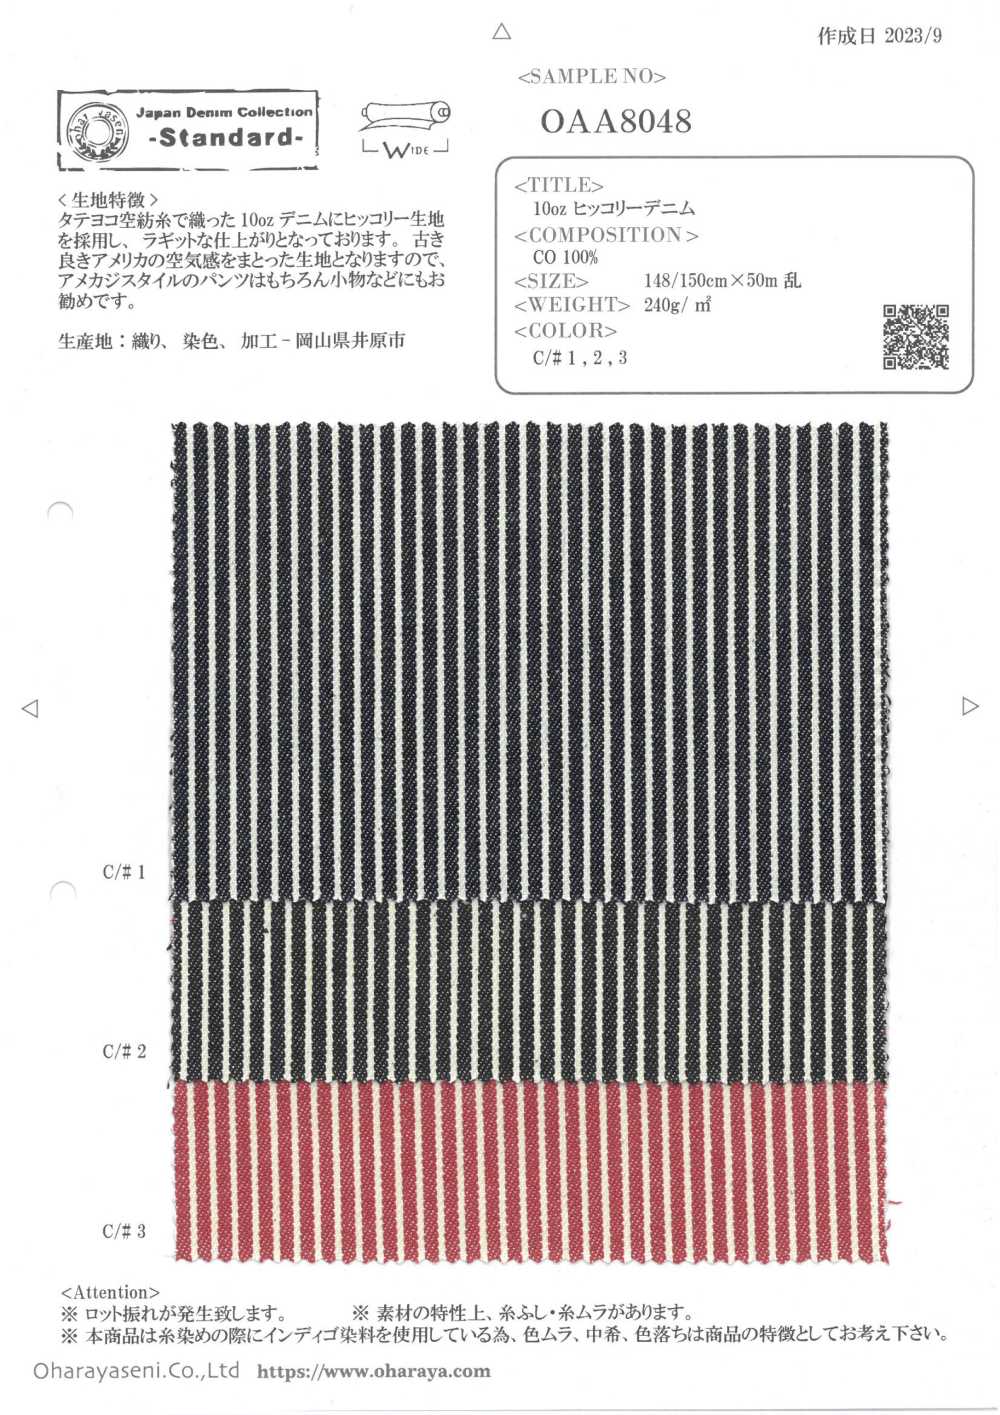 OAA8048 10oz Hickory Denim[Textile / Fabric] Oharayaseni